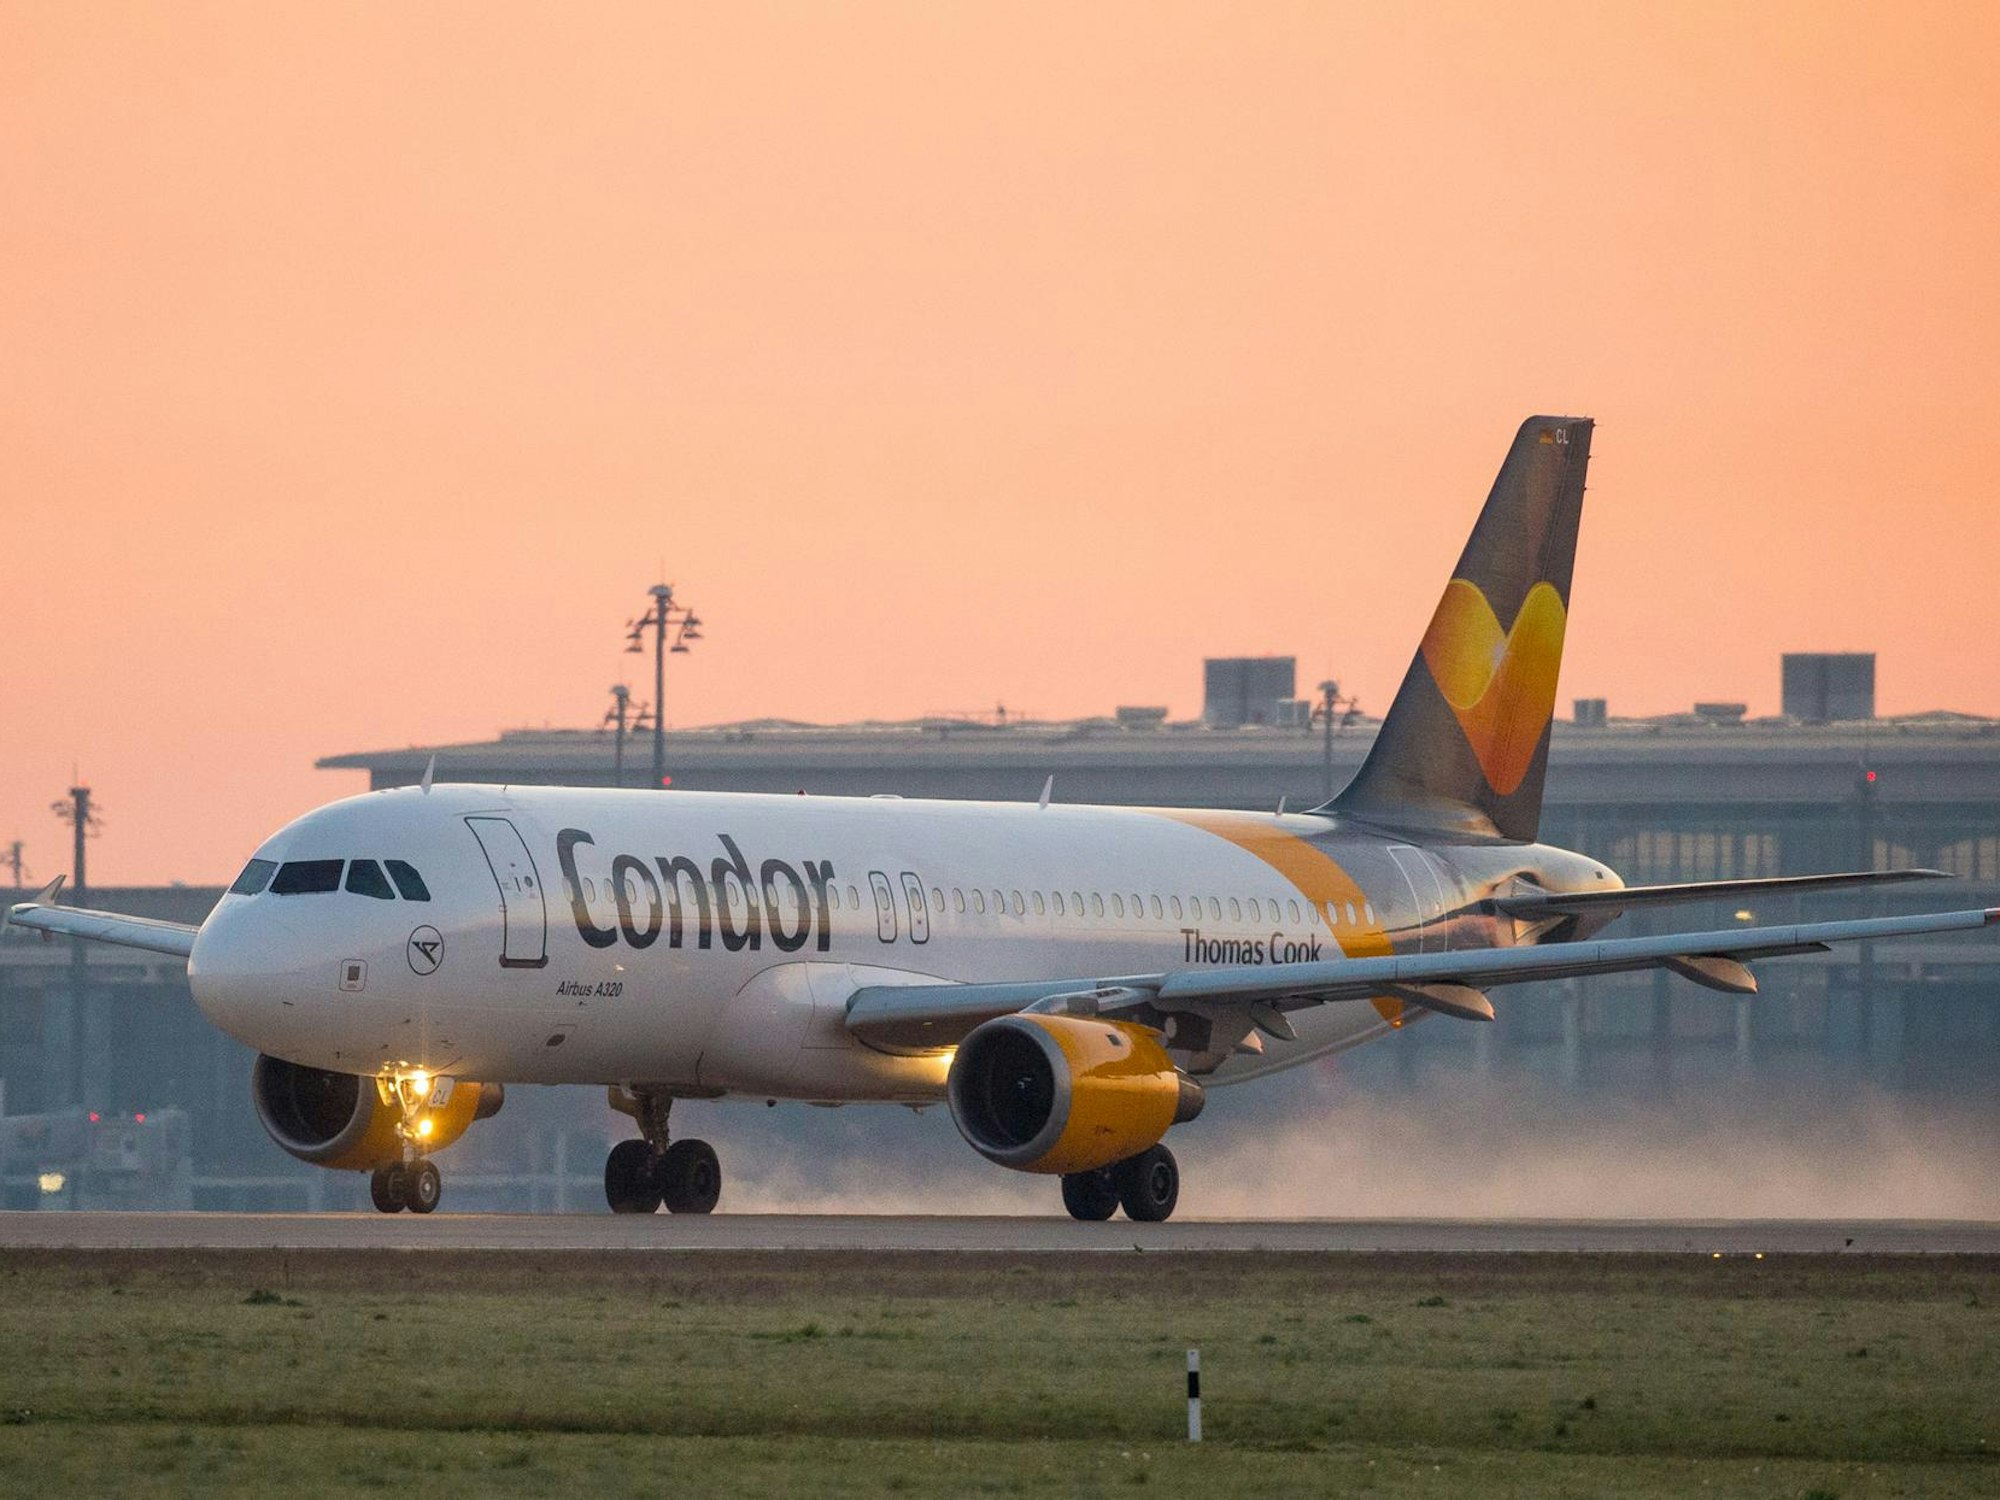 Hier zu sehen: Ein Flugzeug der Airline Condor startet einen Flug bei Sonnenaufgang.